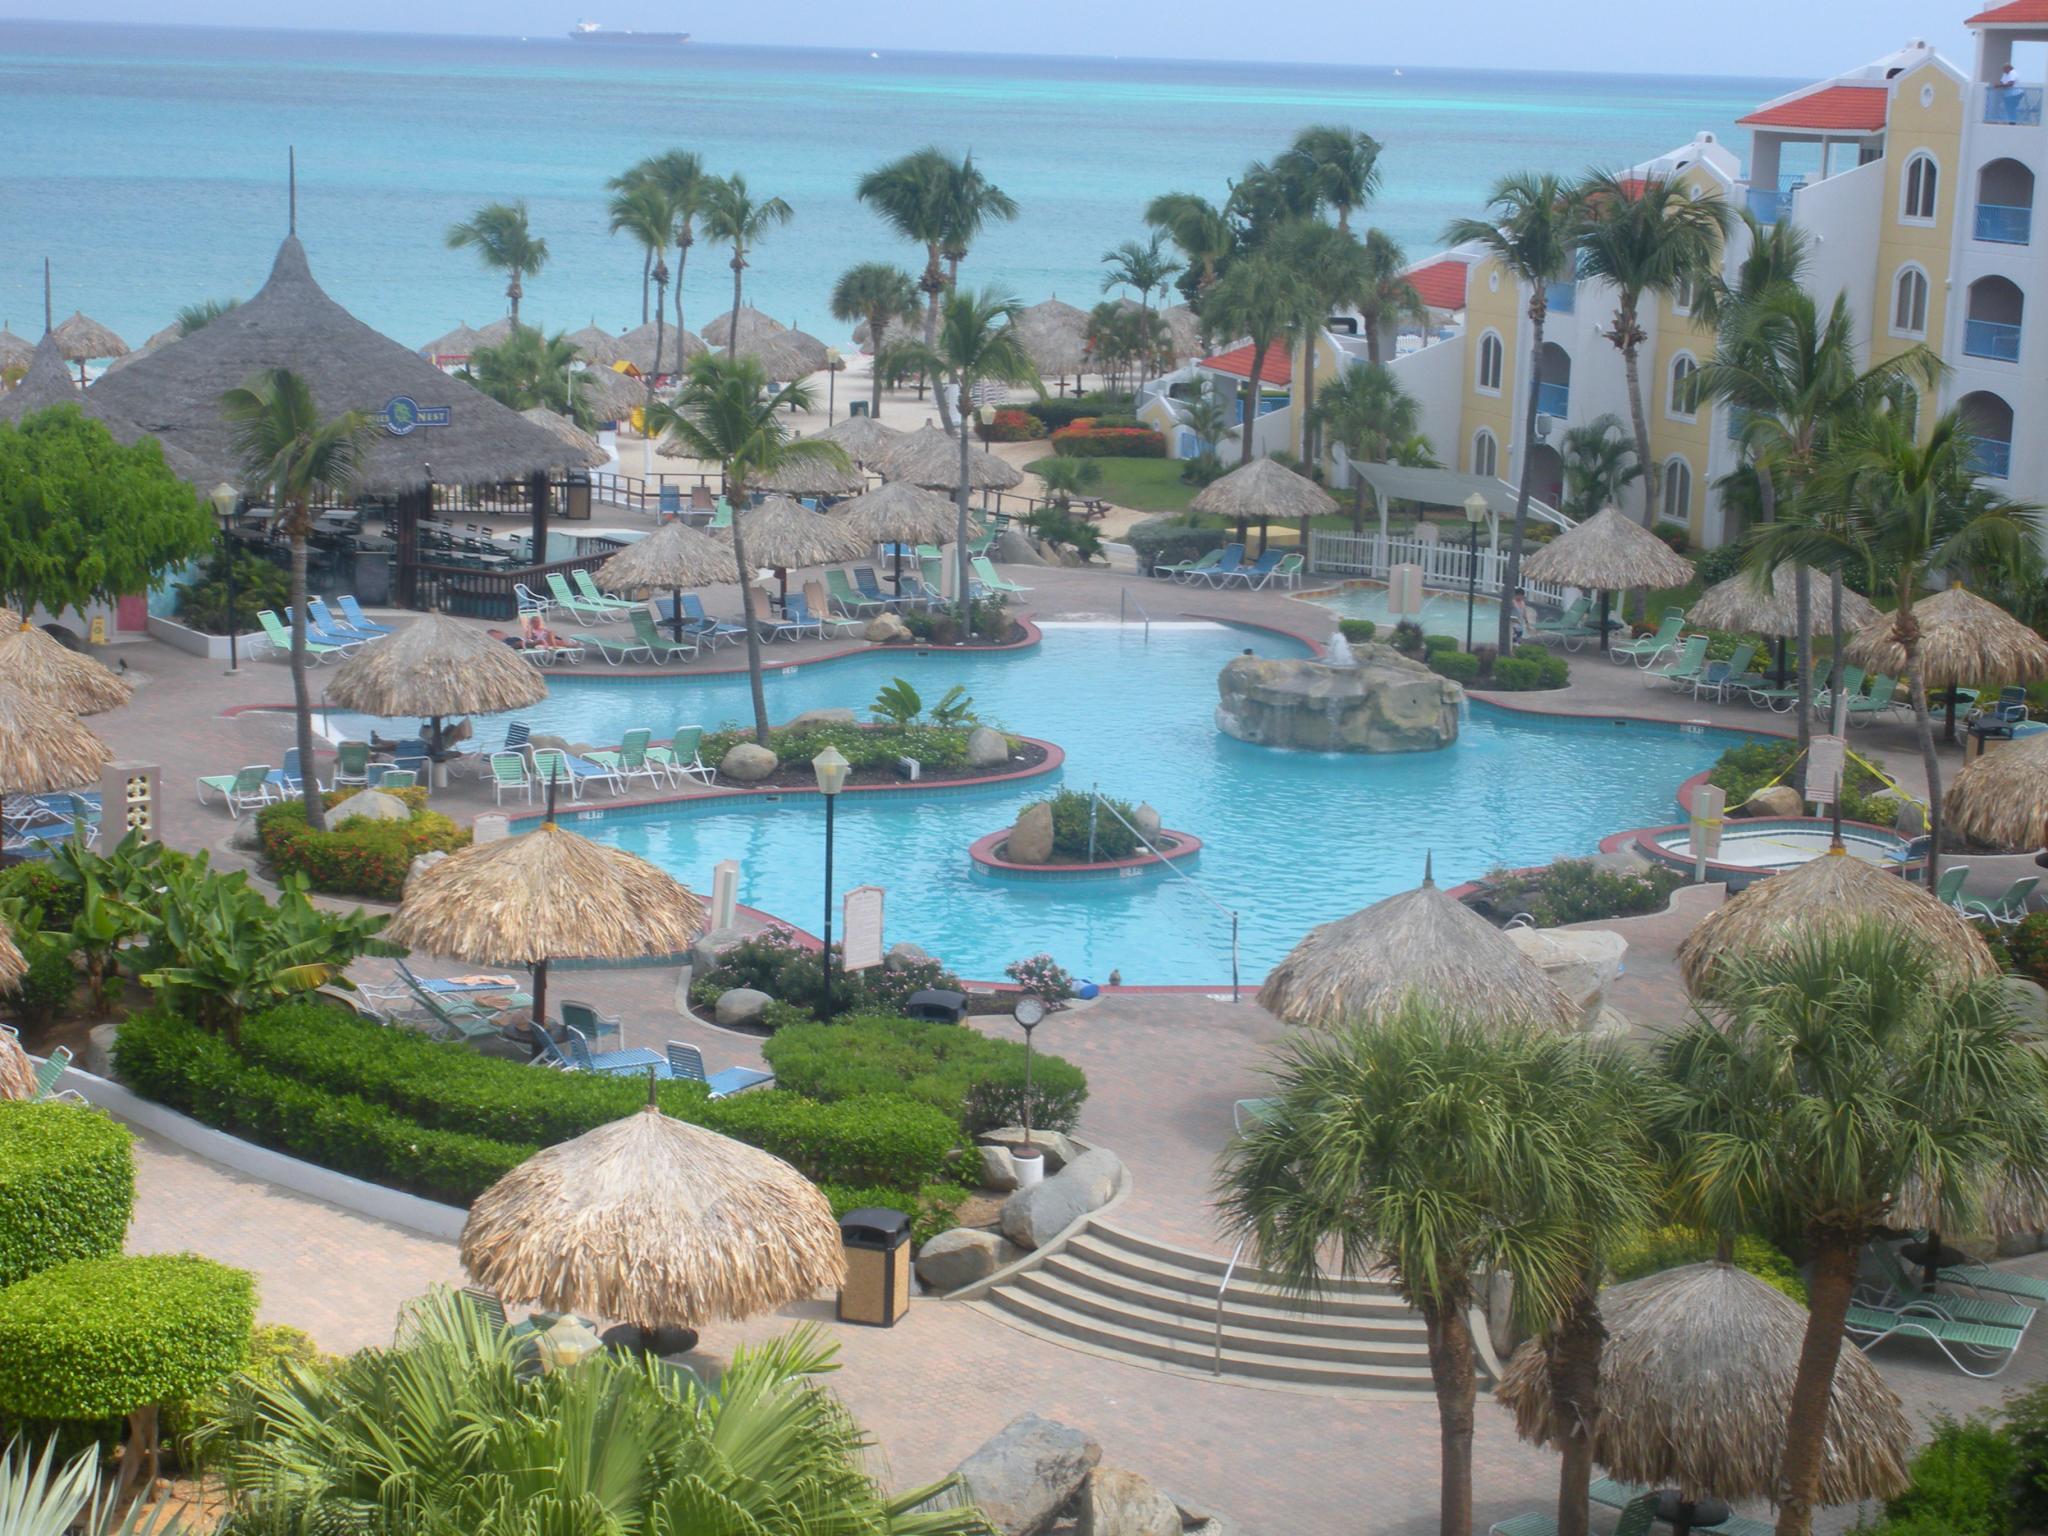 Costa Linda Beach Resort Timeshare resale partners